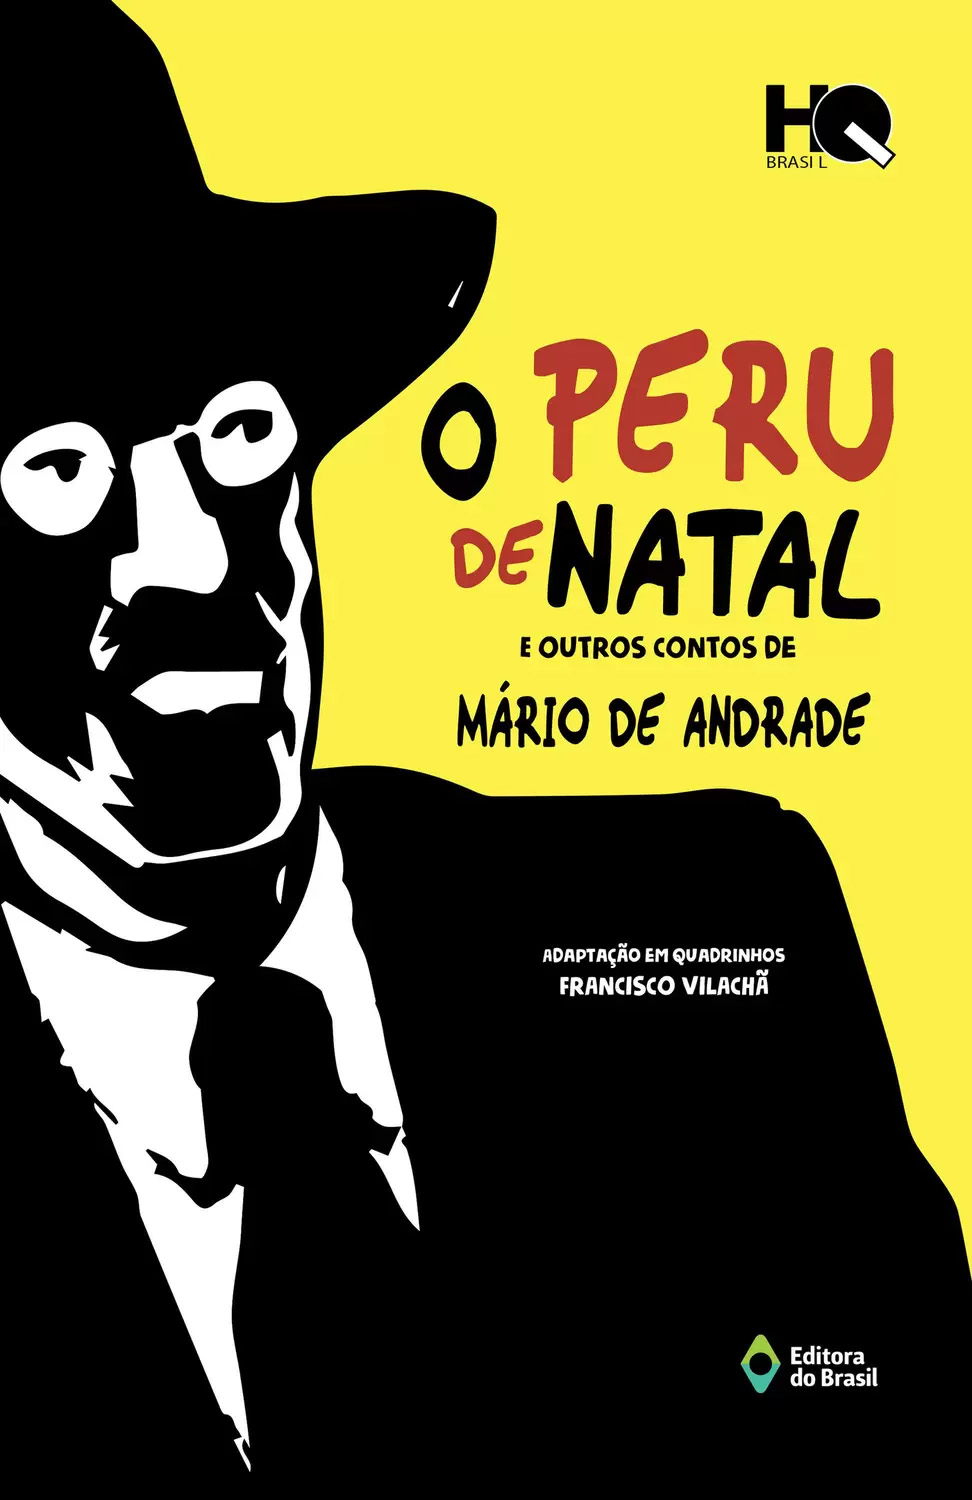 Livro "O Peru de Natal", de Mário de Andrade